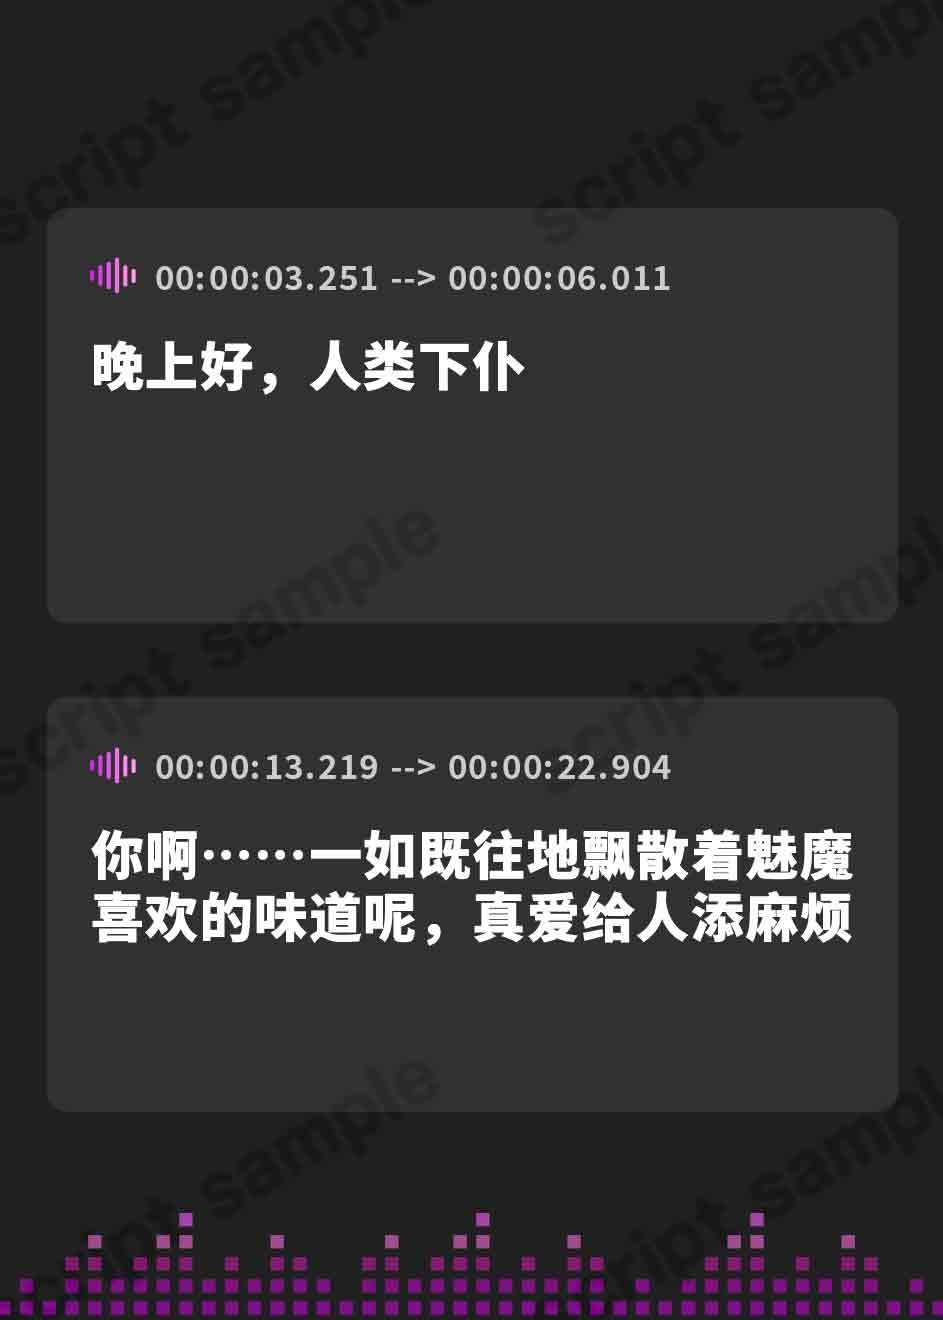 【簡体中文版】無感情サキュバスにしごく回数を指示される数字責めオナニーサポート